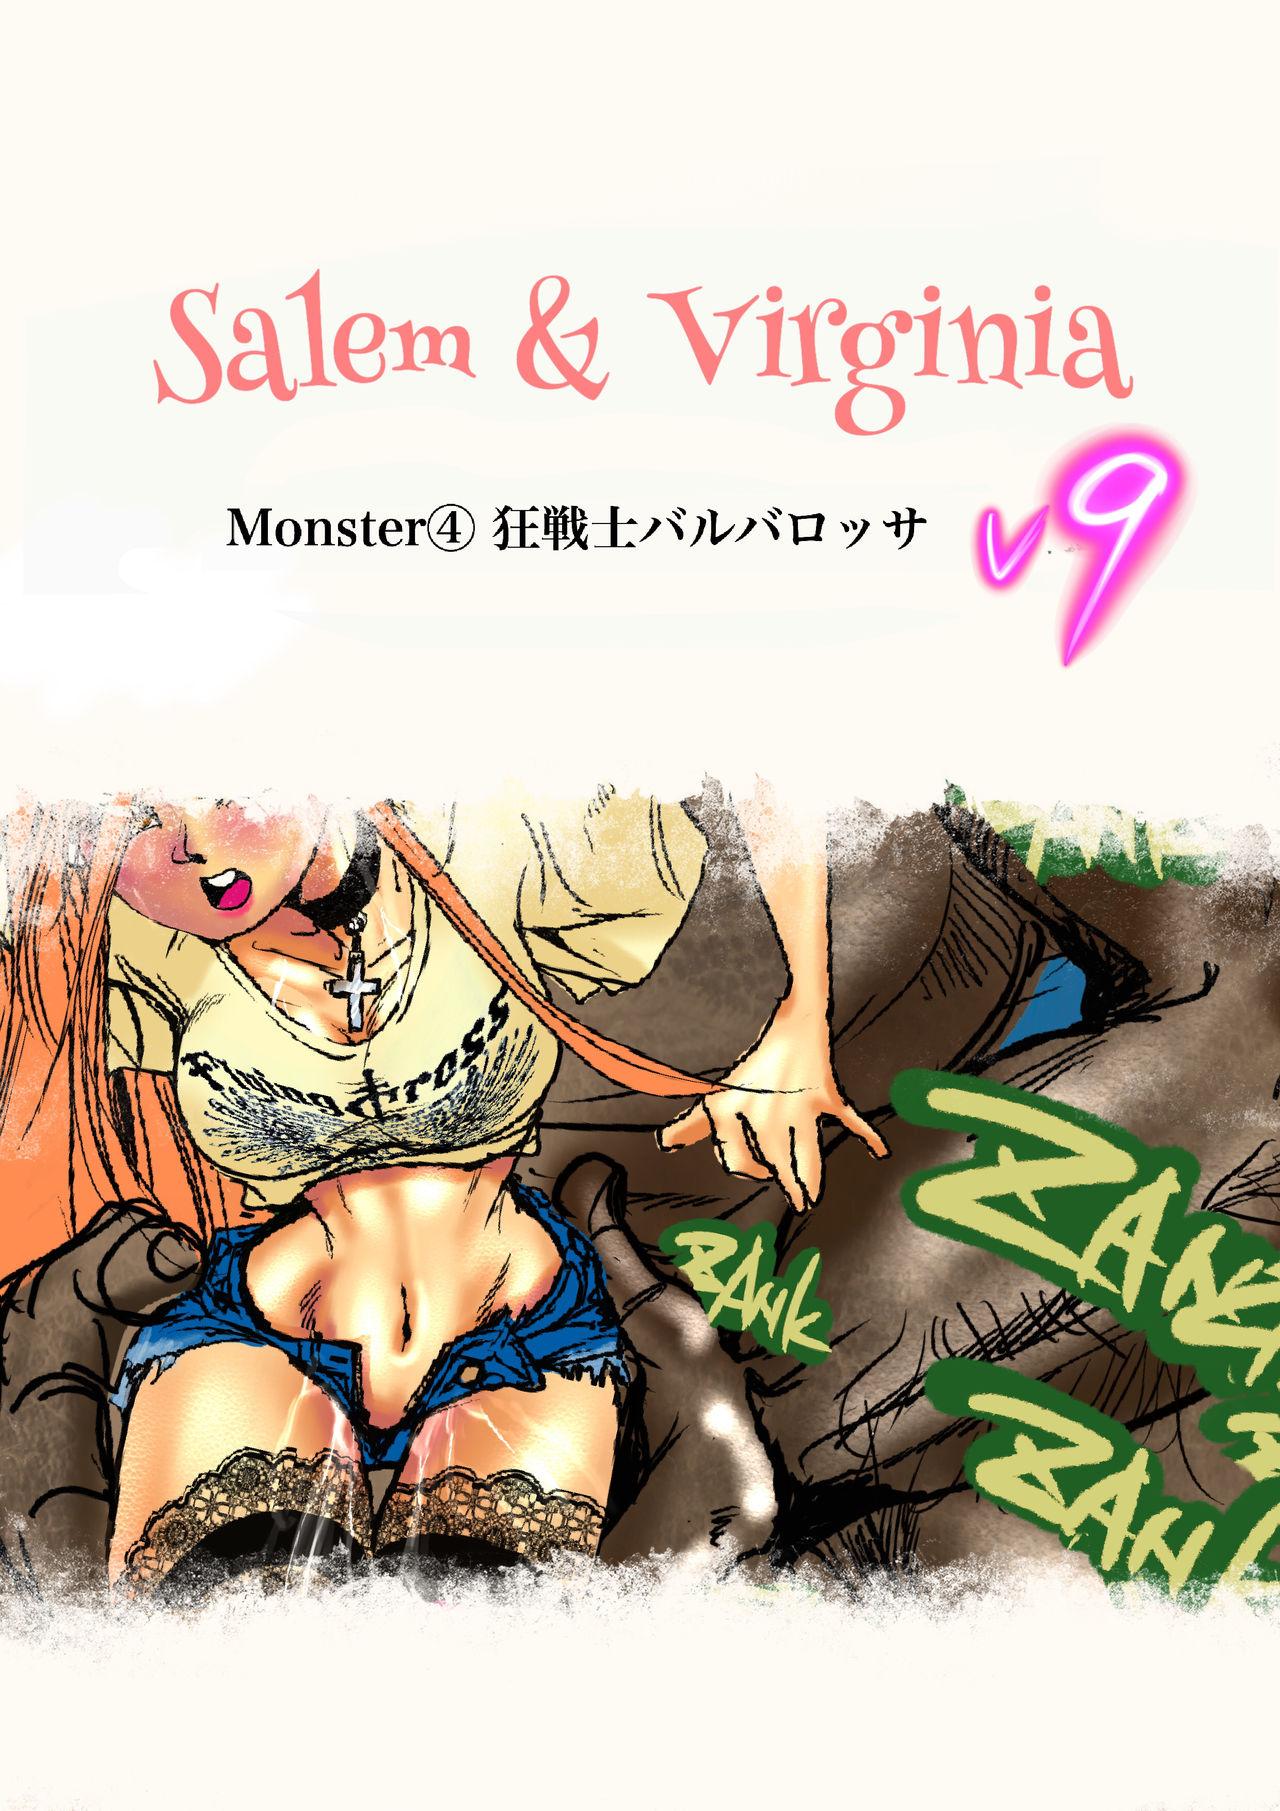 Salem & Virginia 115